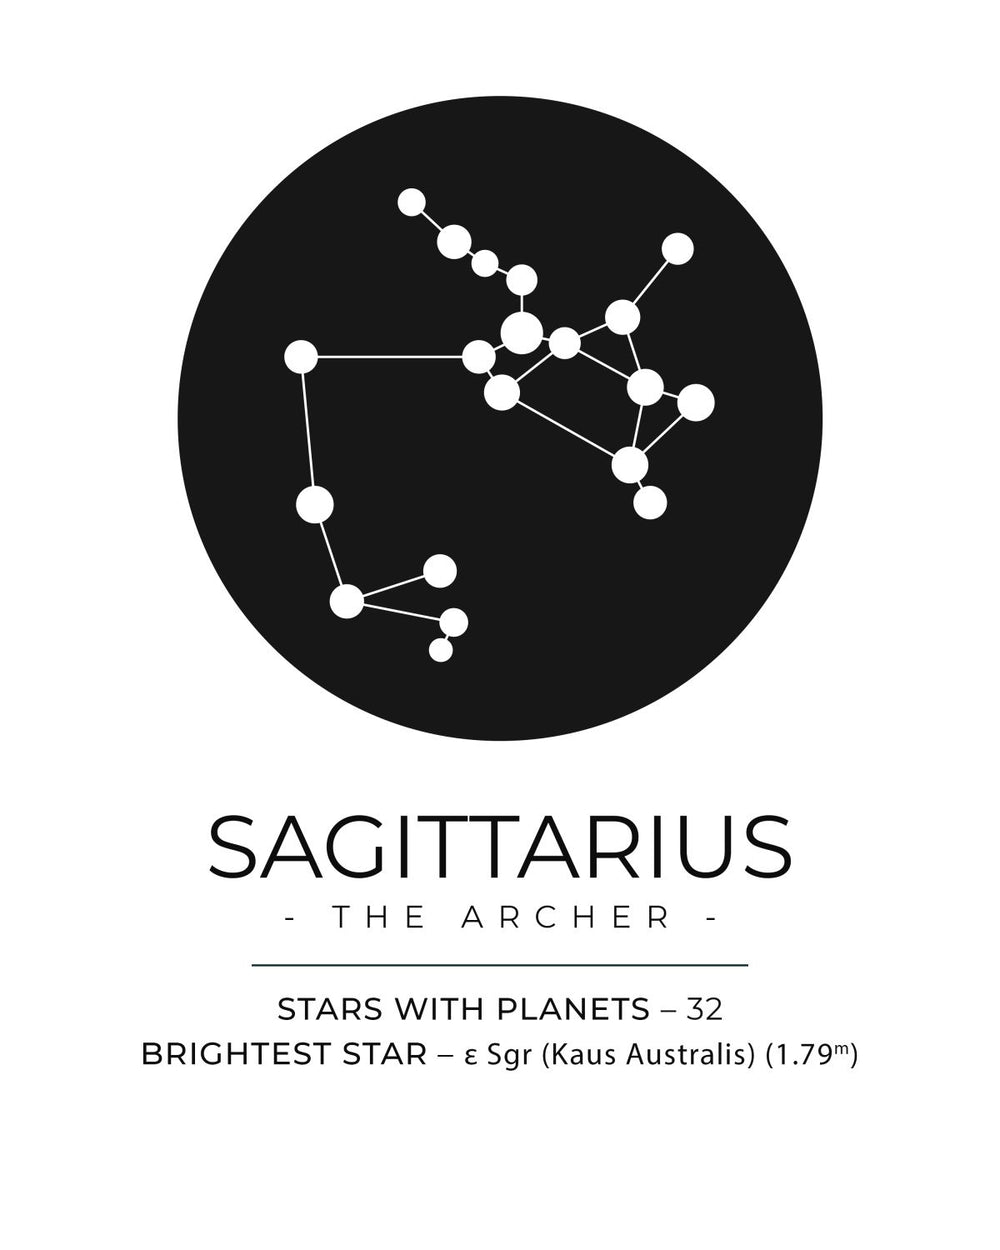 The Sagittarius Constellation